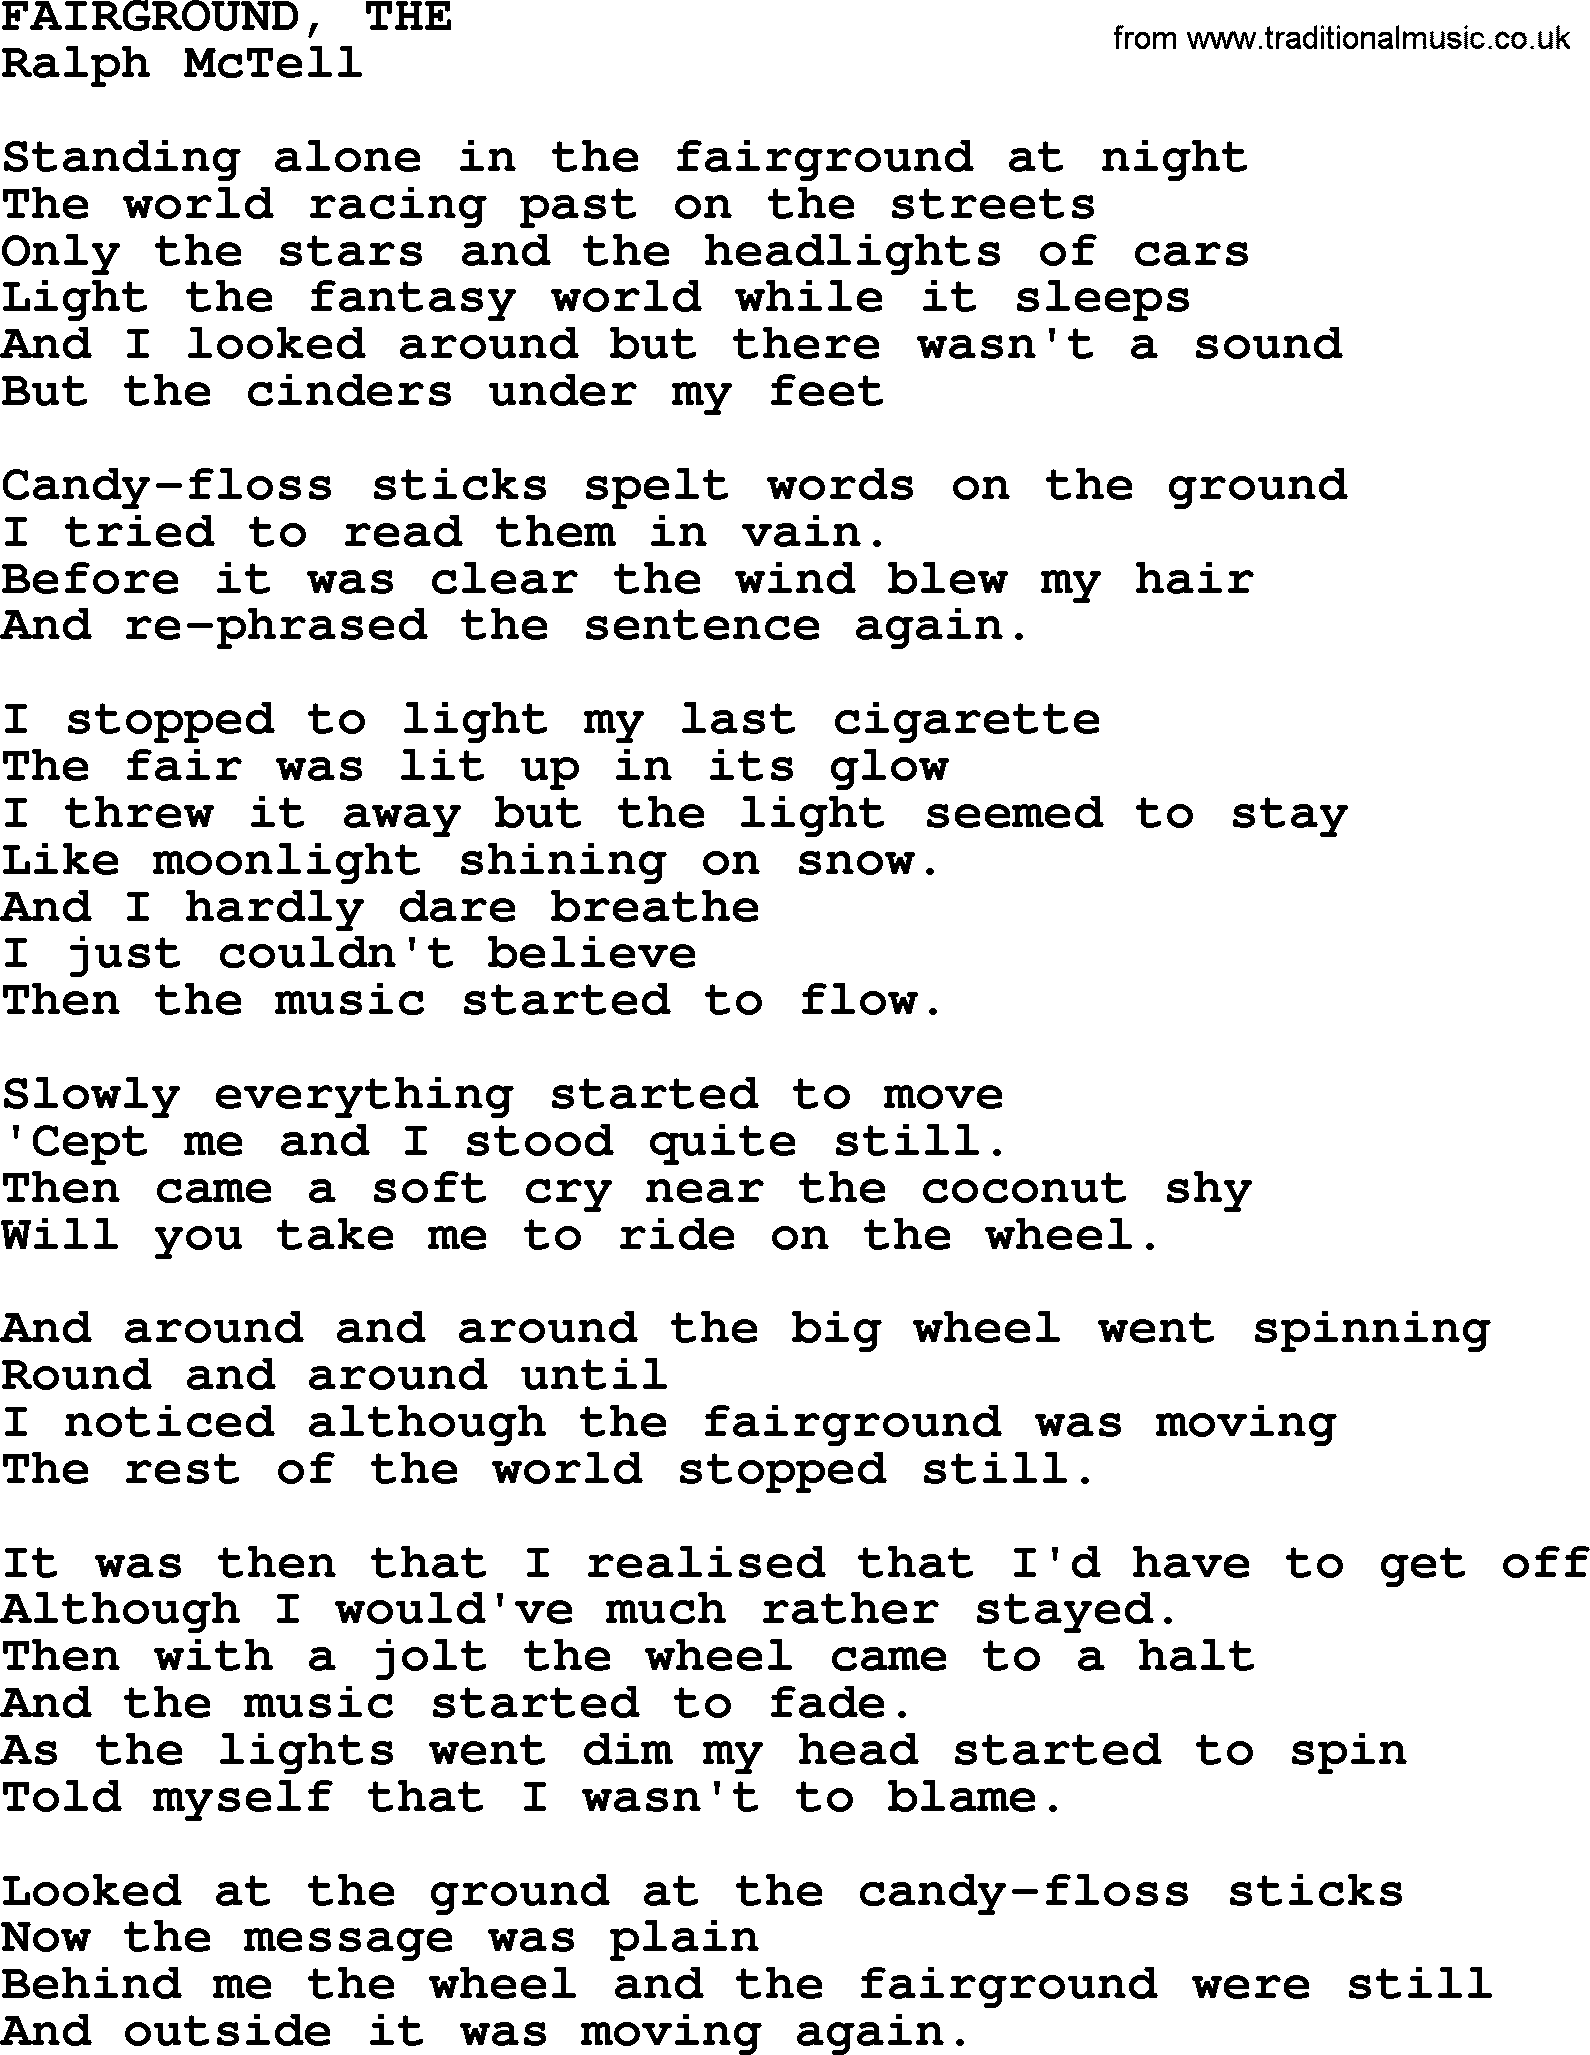 Ralph McTell Song: Fairground, The, lyrics